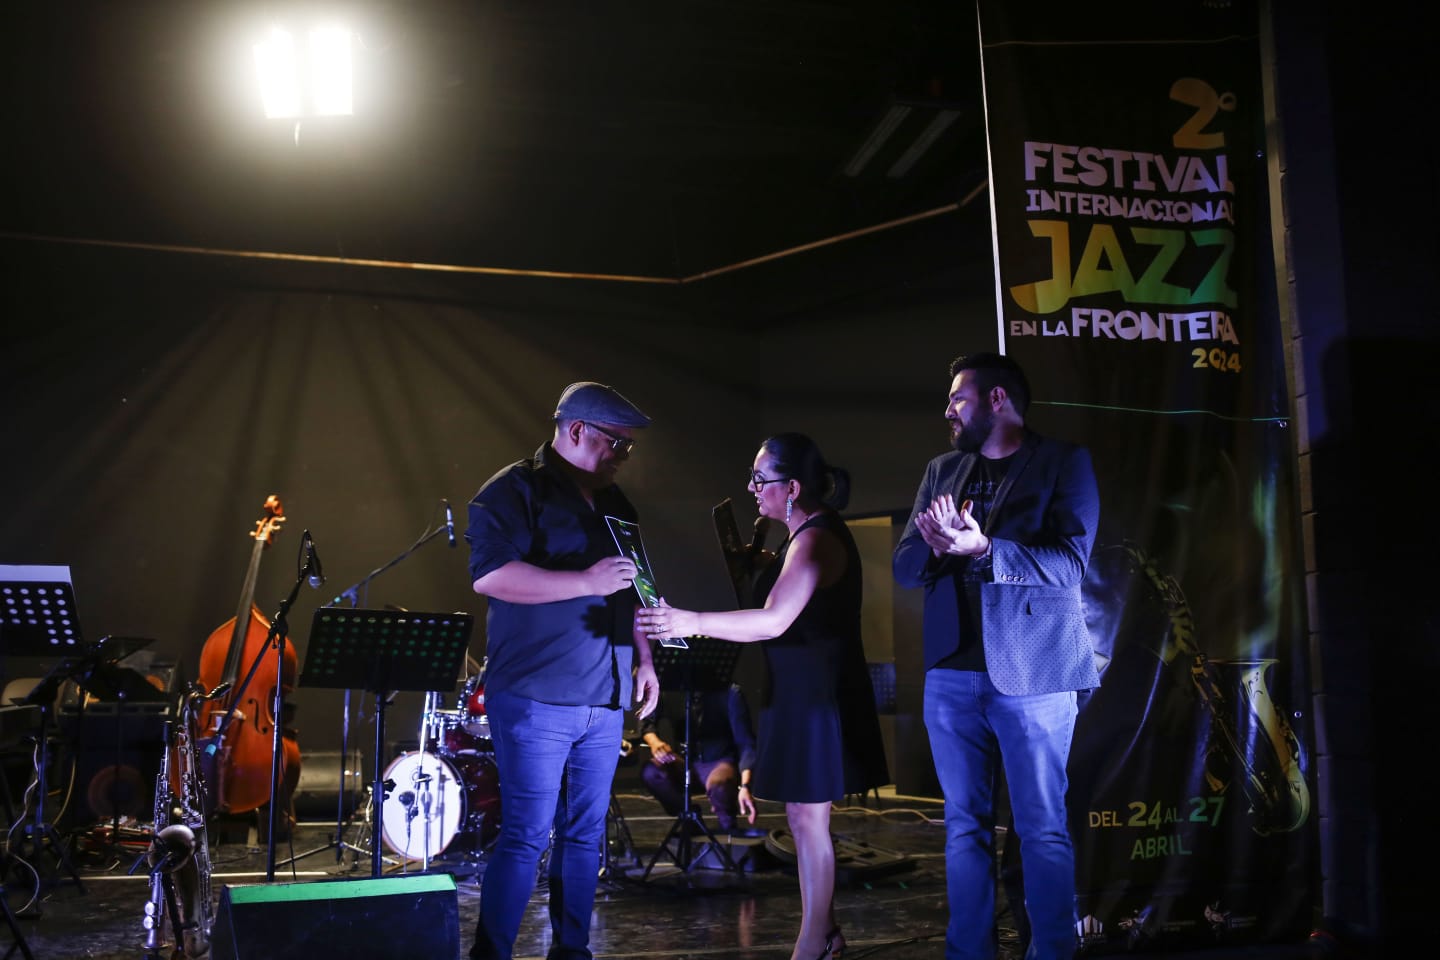 Arrancó el Festival Internacional Jazz en la Frontera